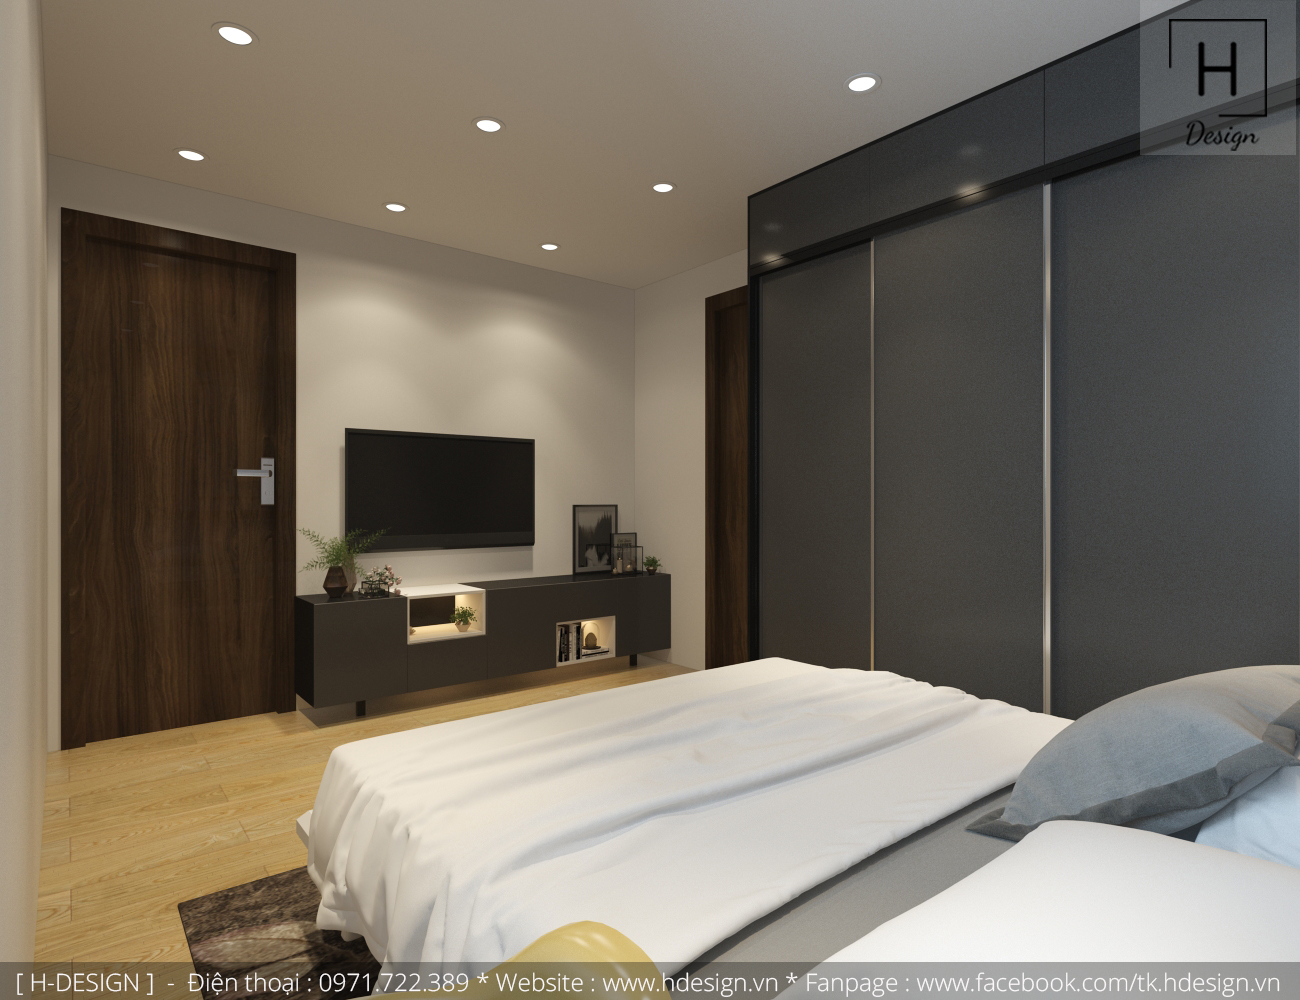 Thiết kế thi công nội thất chung cư đẹp tại Hà Nội - Hdesign